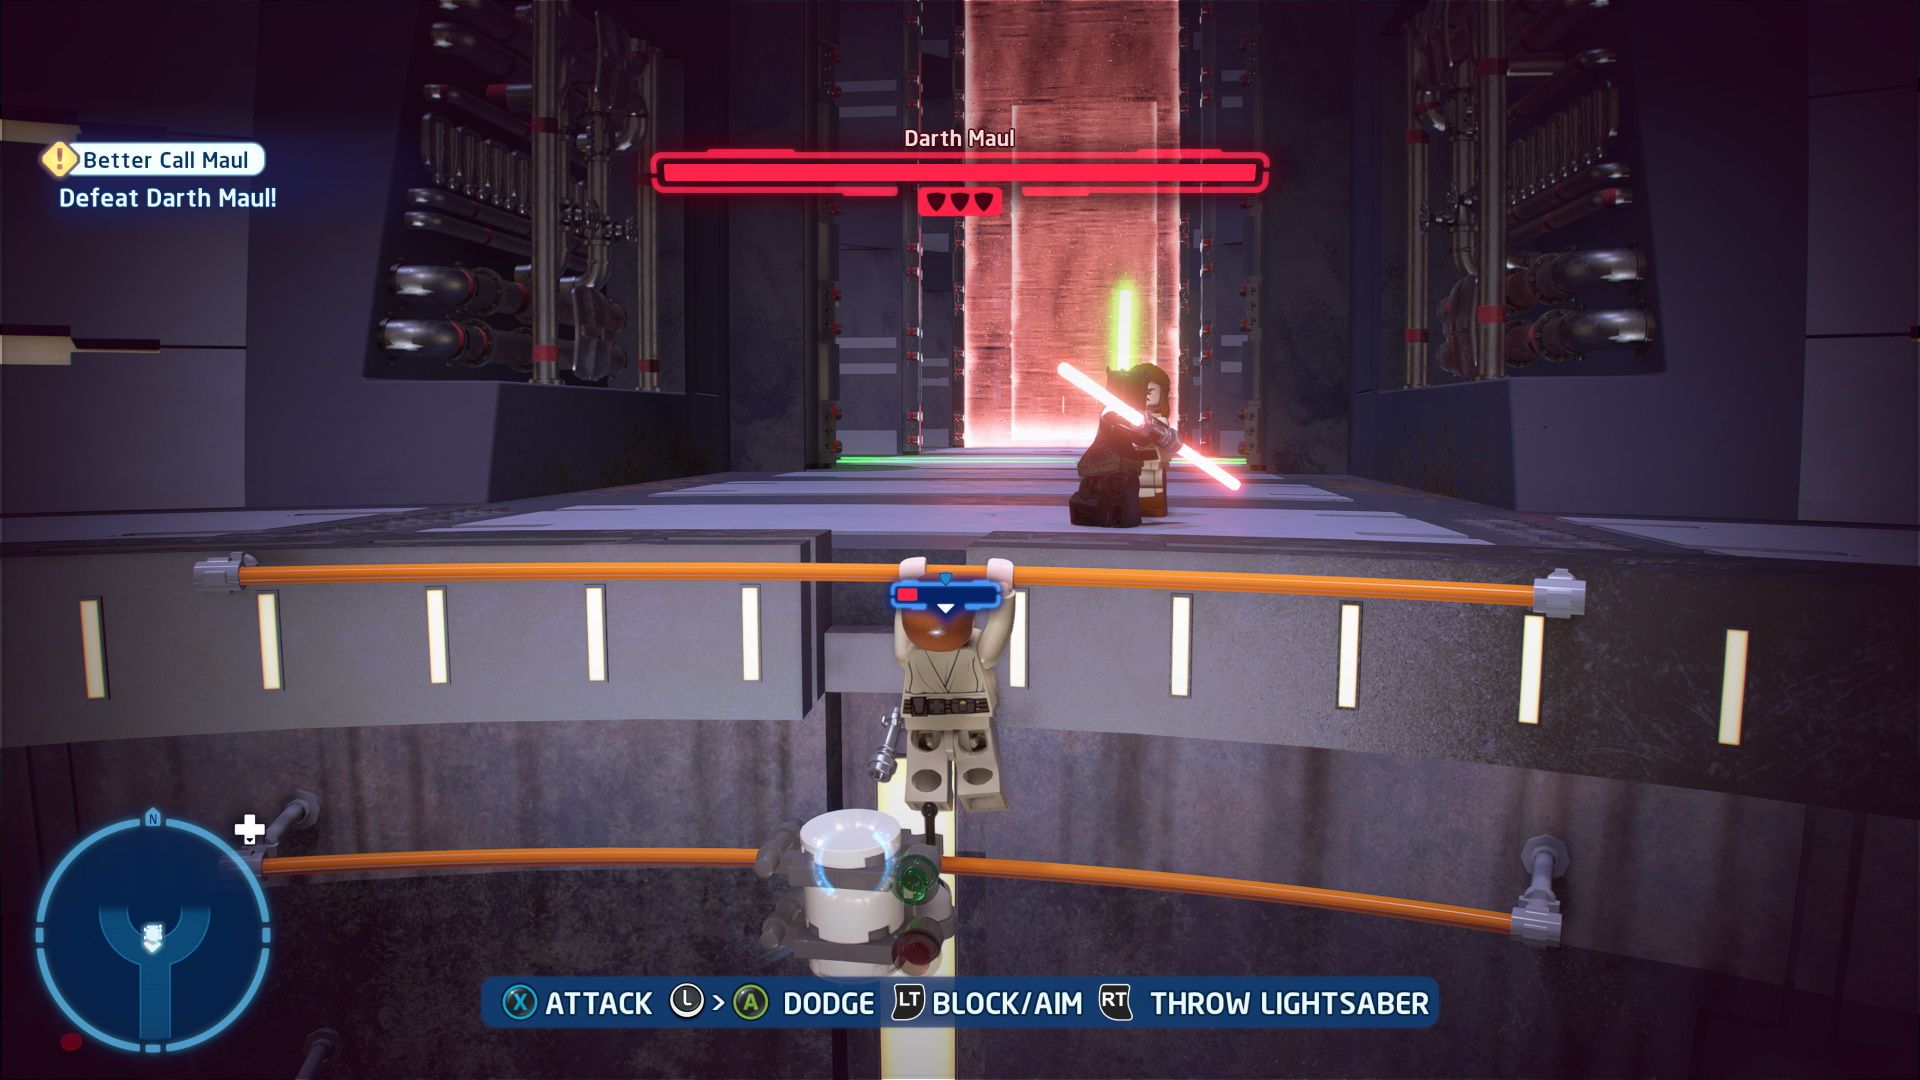 Lego Star Wars Skywalker Saga, Episode 1, Better Call Maul, Final Minikit Piece